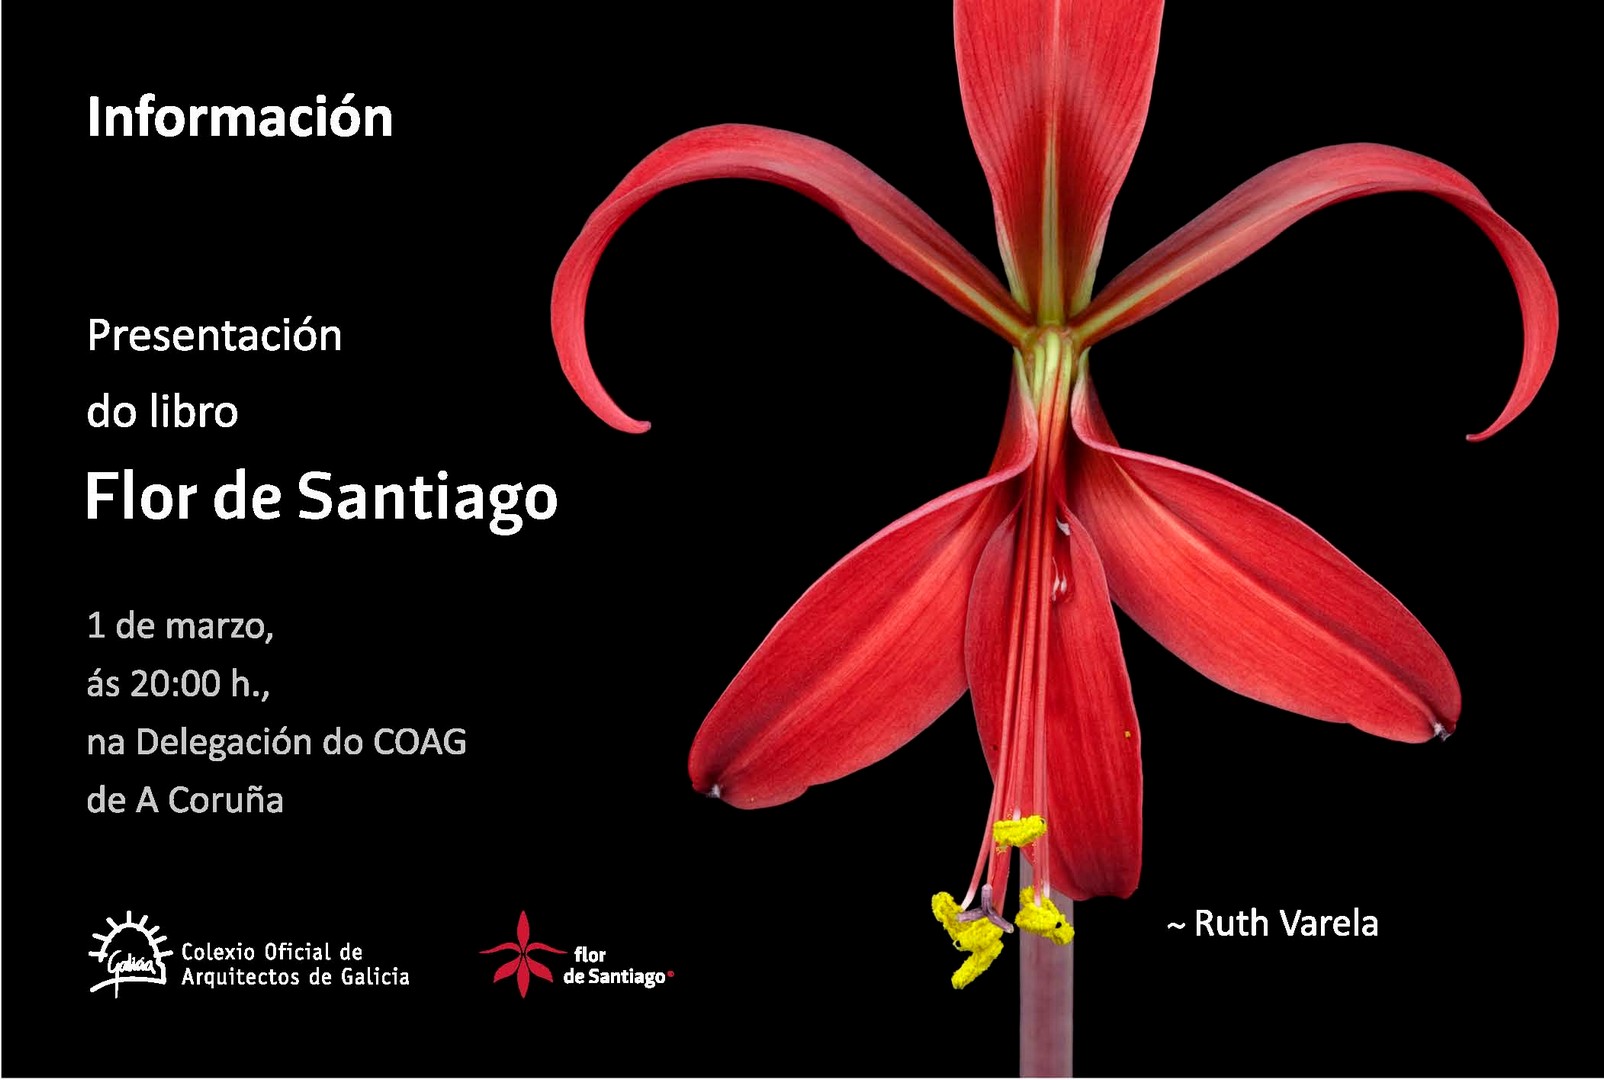 Presentación do libro “Flor de Santiago”